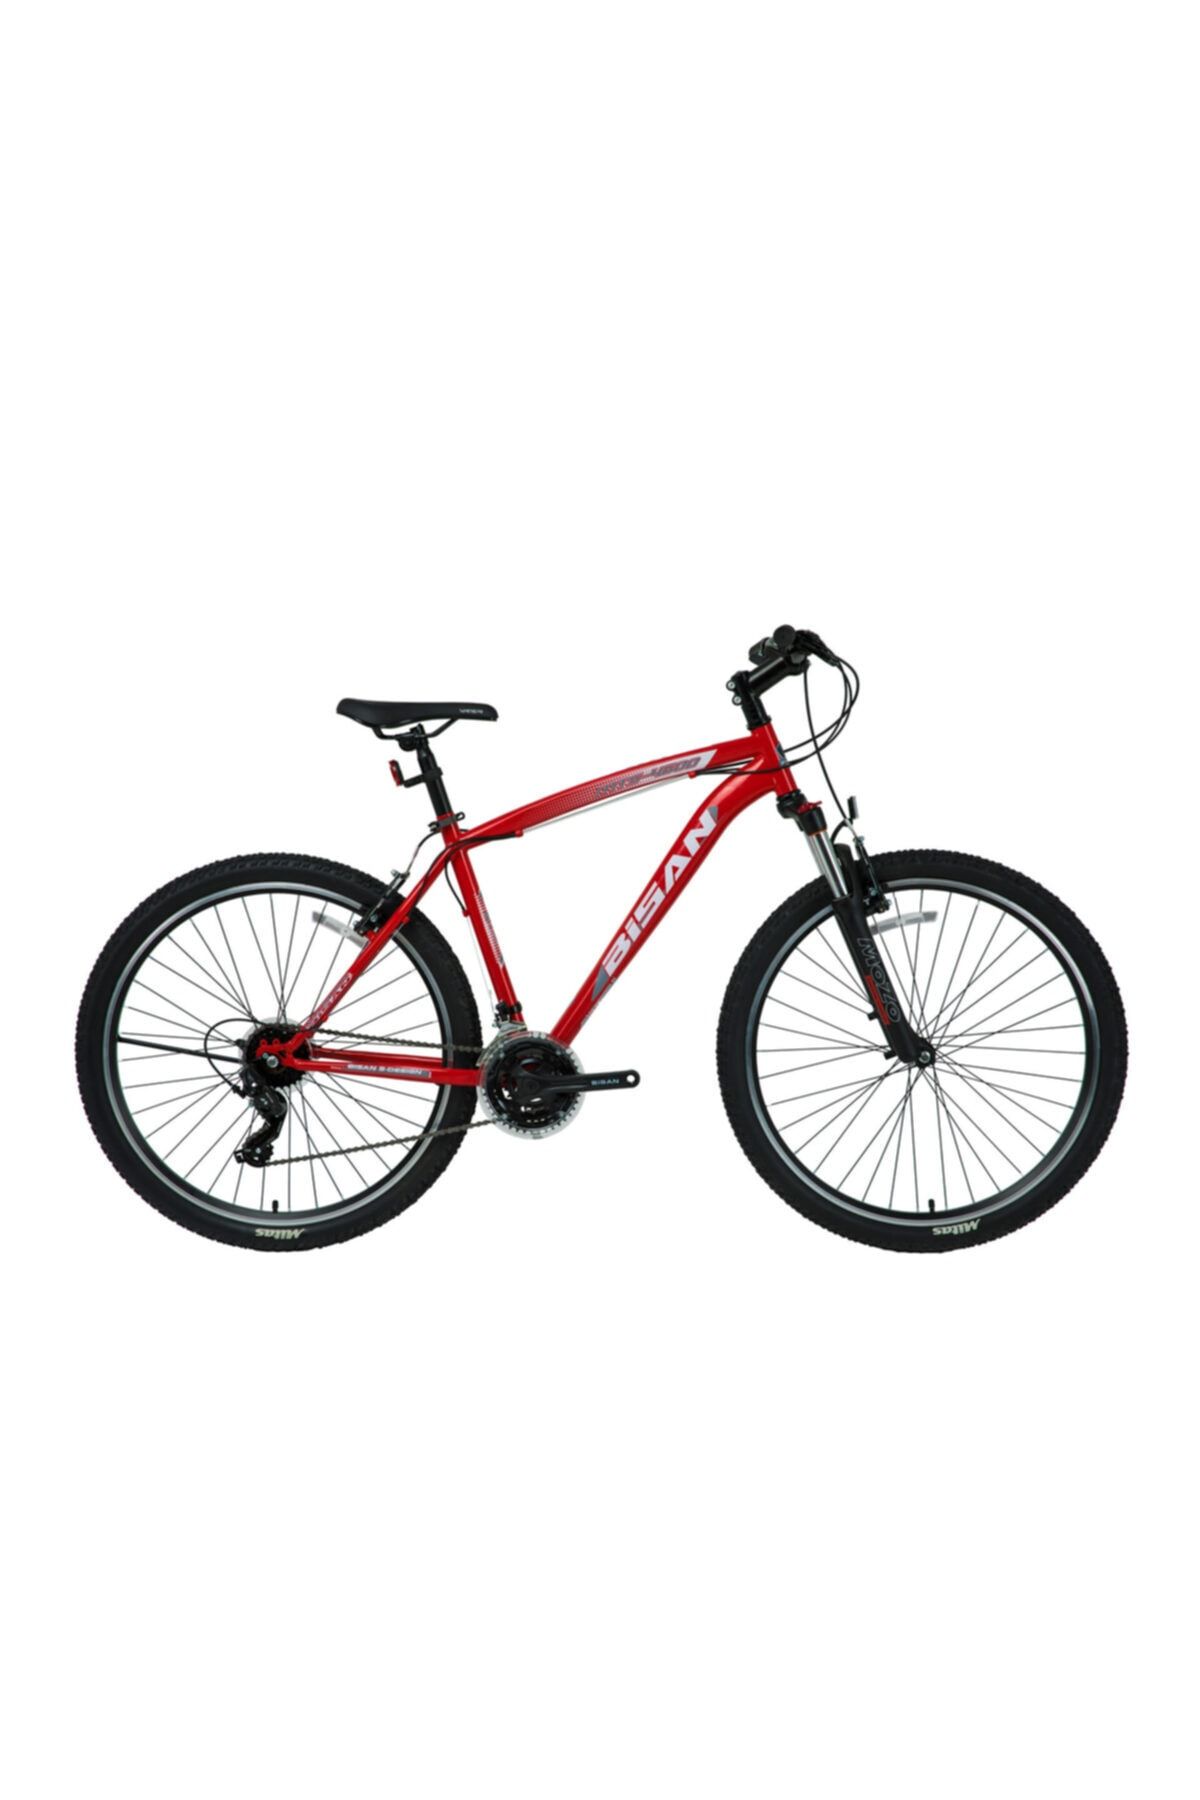 Bisan Mts4600 26''- 21 Vitesli Dağ Bisikleti - Kırmızı